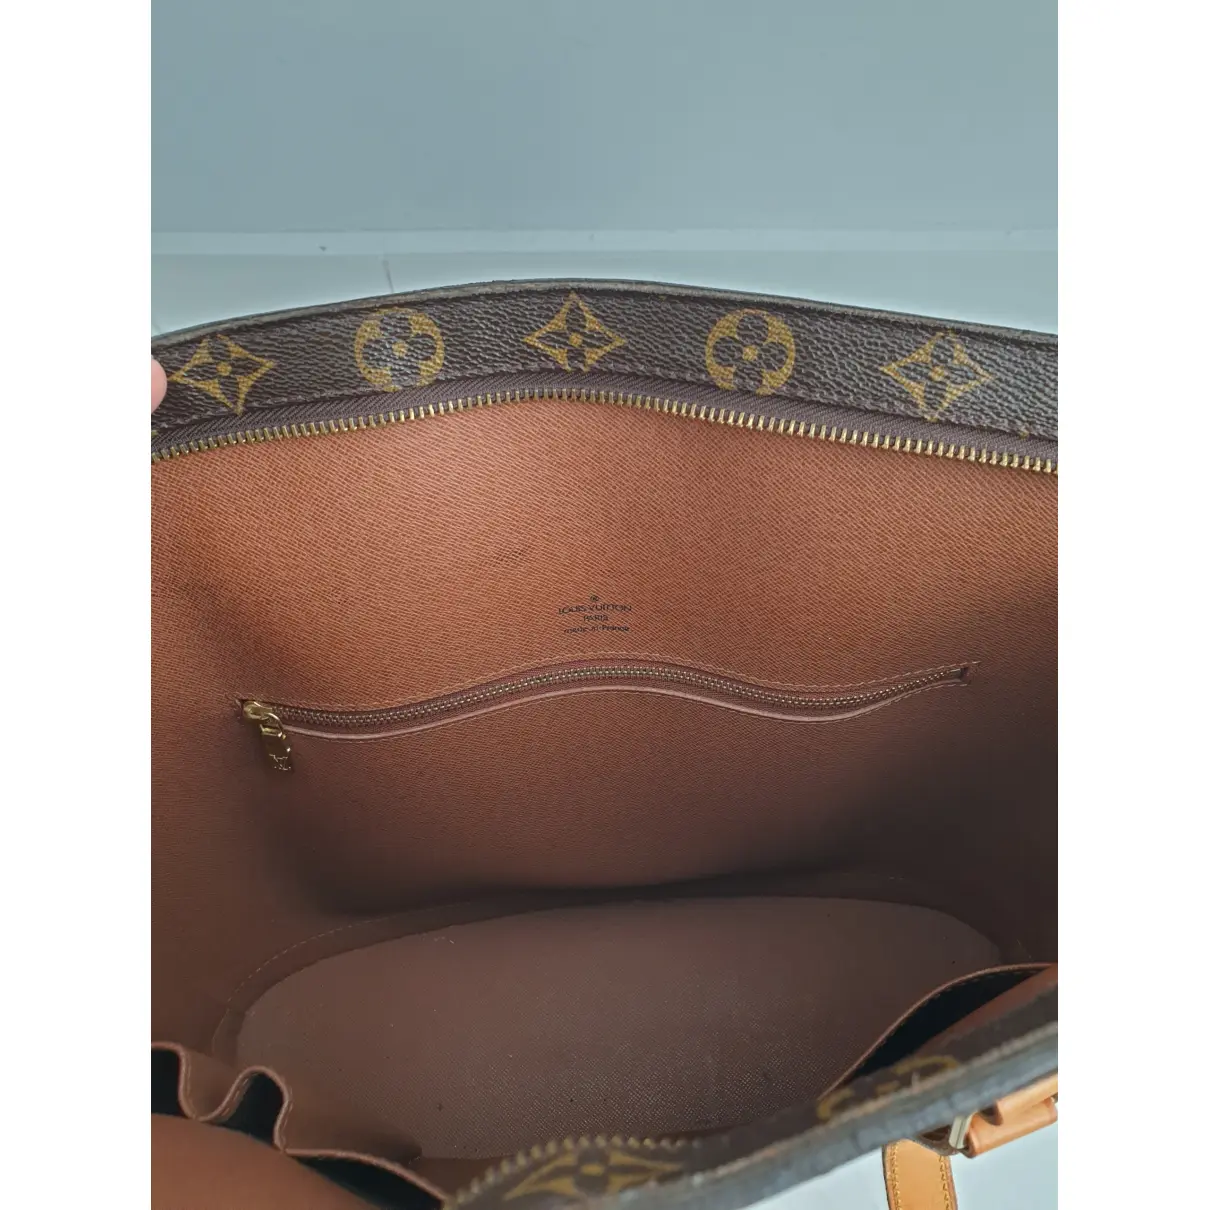 Babylone vintage cloth handbag Louis Vuitton